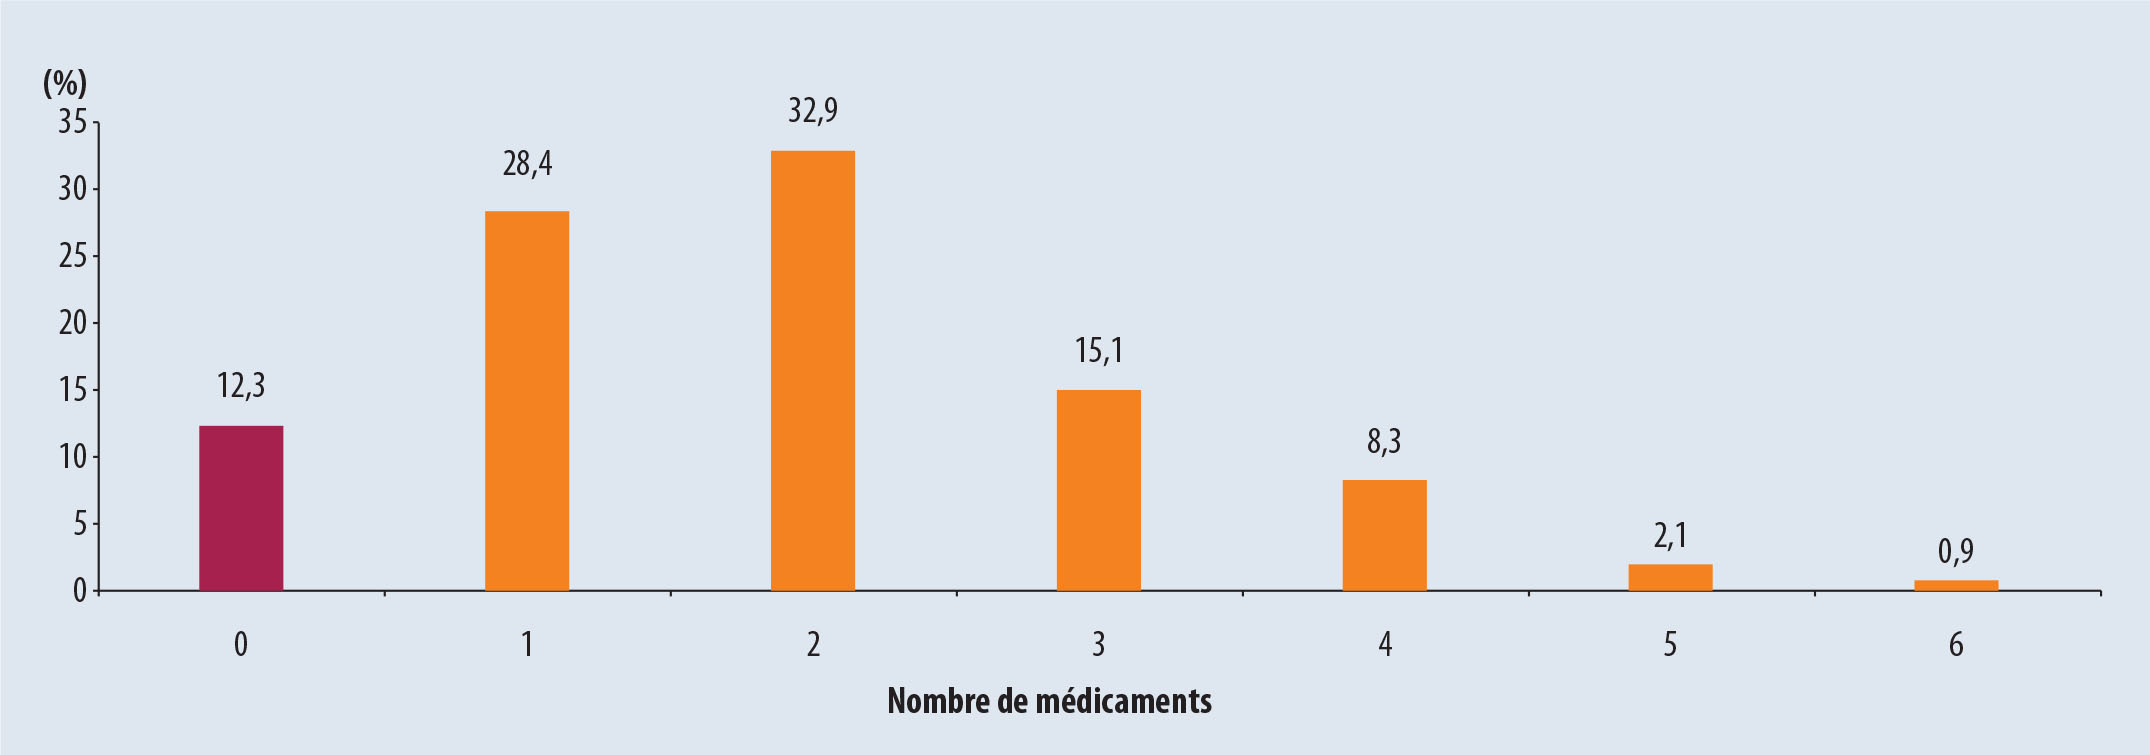 Étude IPOP : analyse qualitative et quantitative sur le risque iatrogénique chez les sujets âgés en France ... - Figure 4